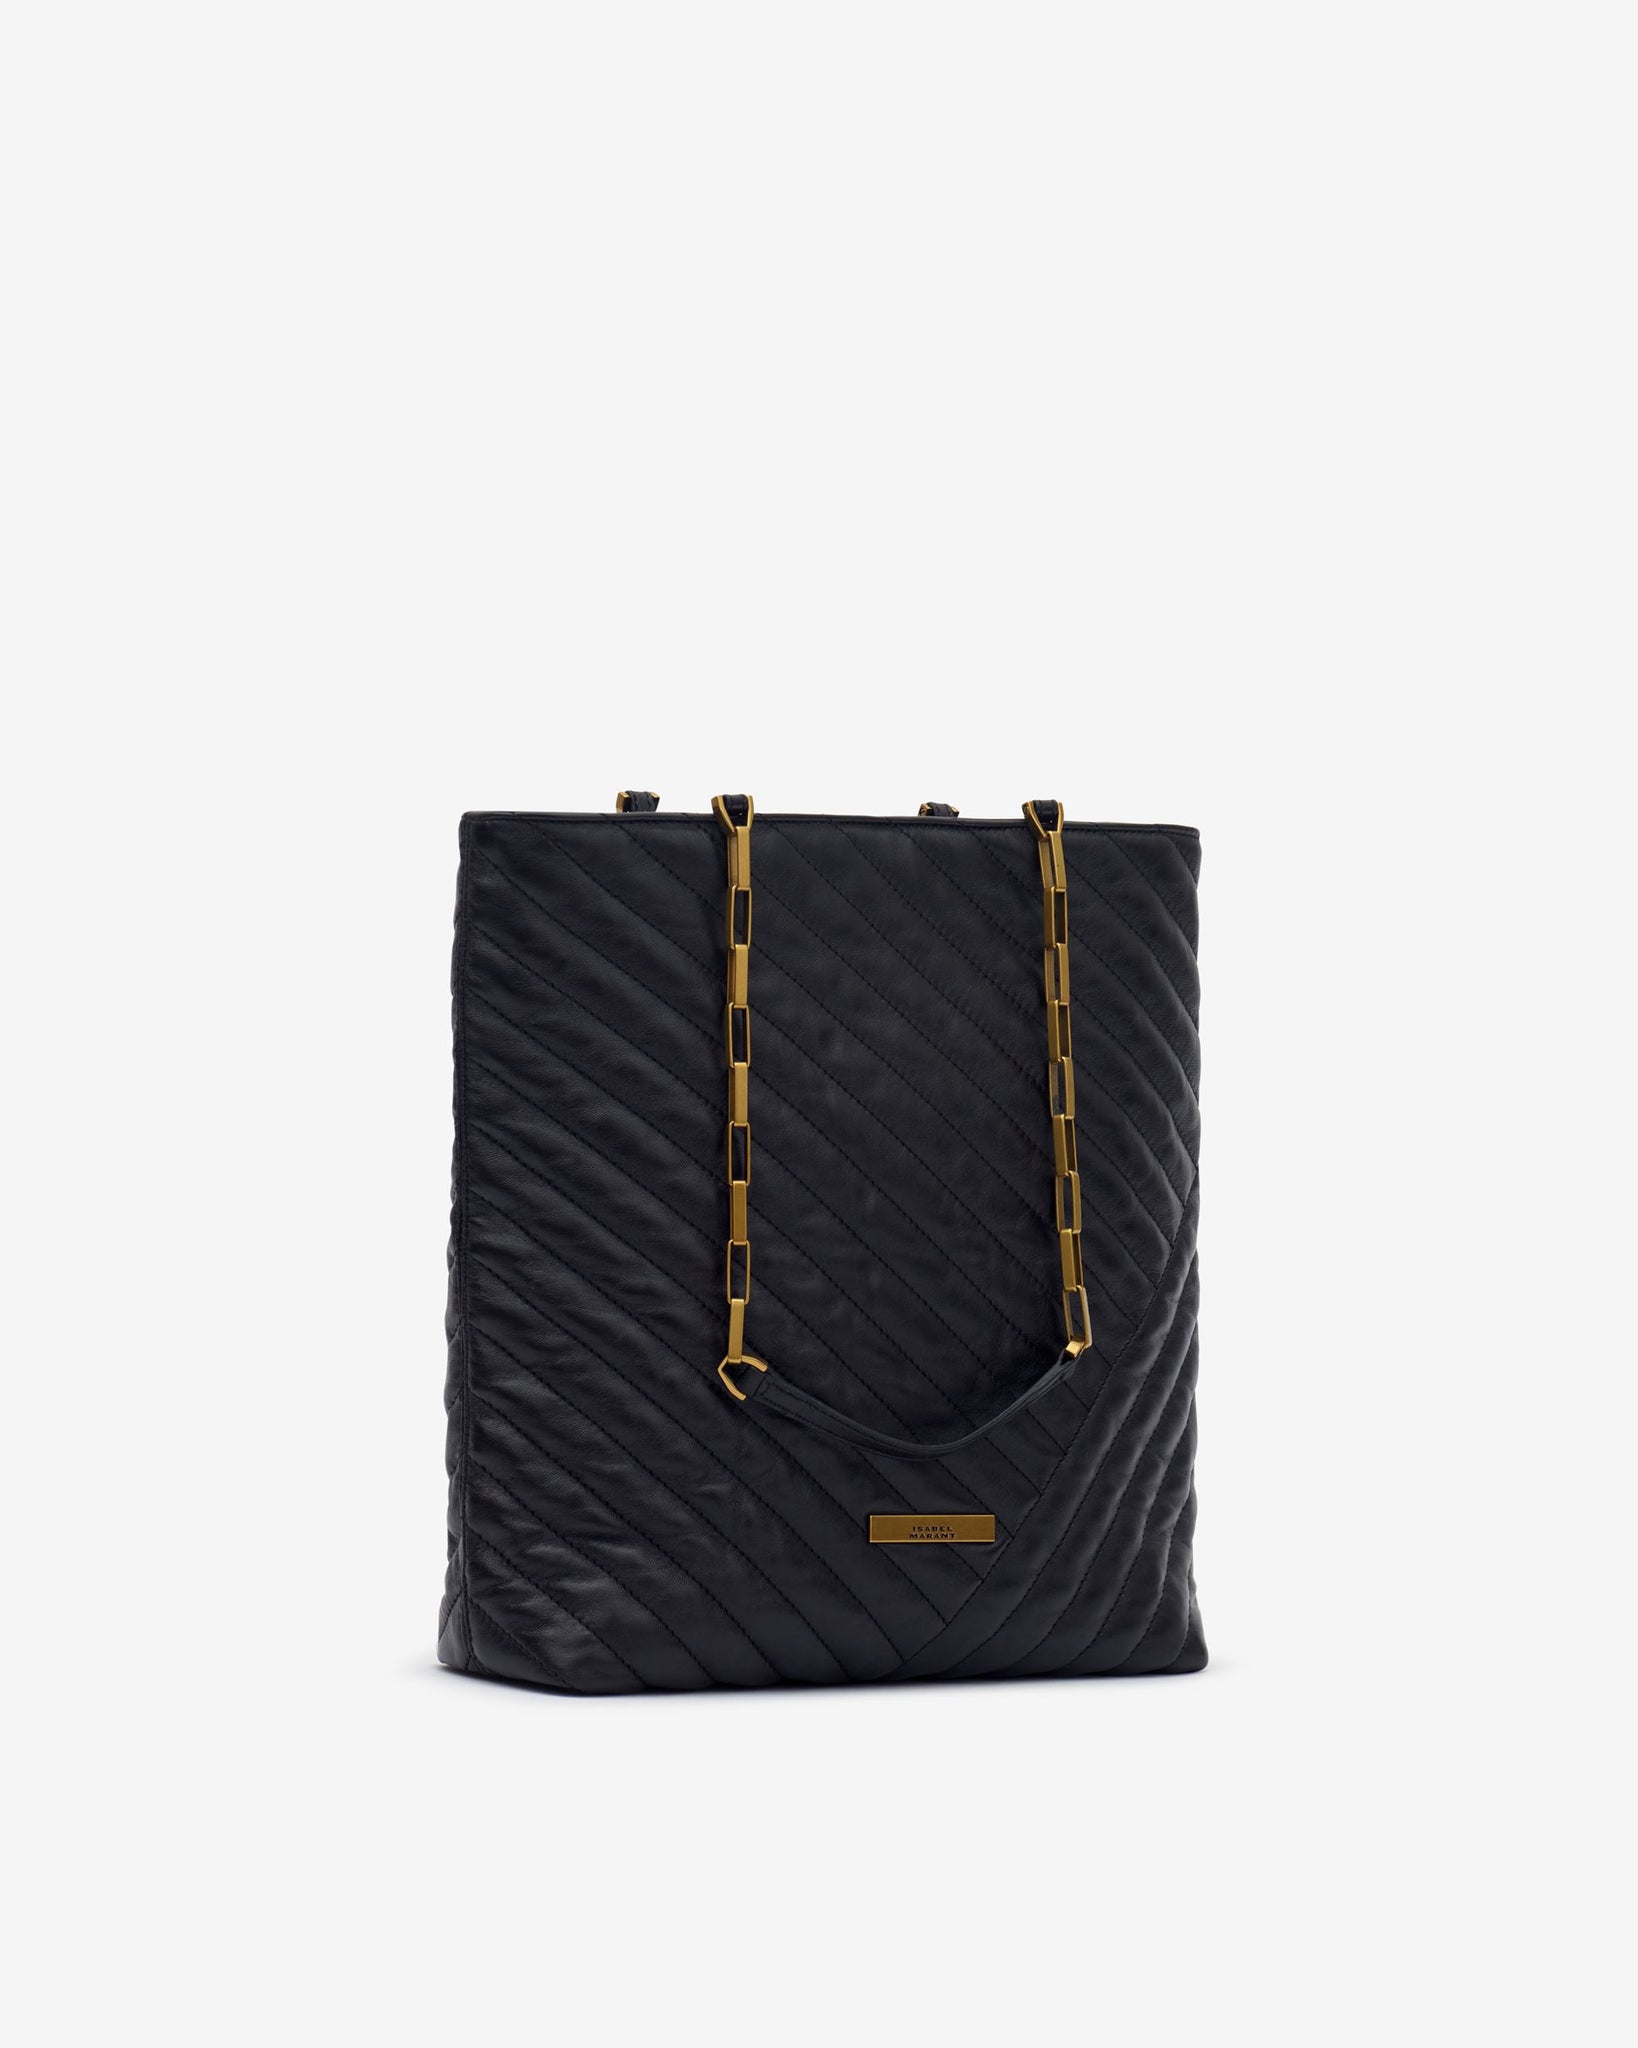 Merine Quilted Leather Shoulder Bag Black